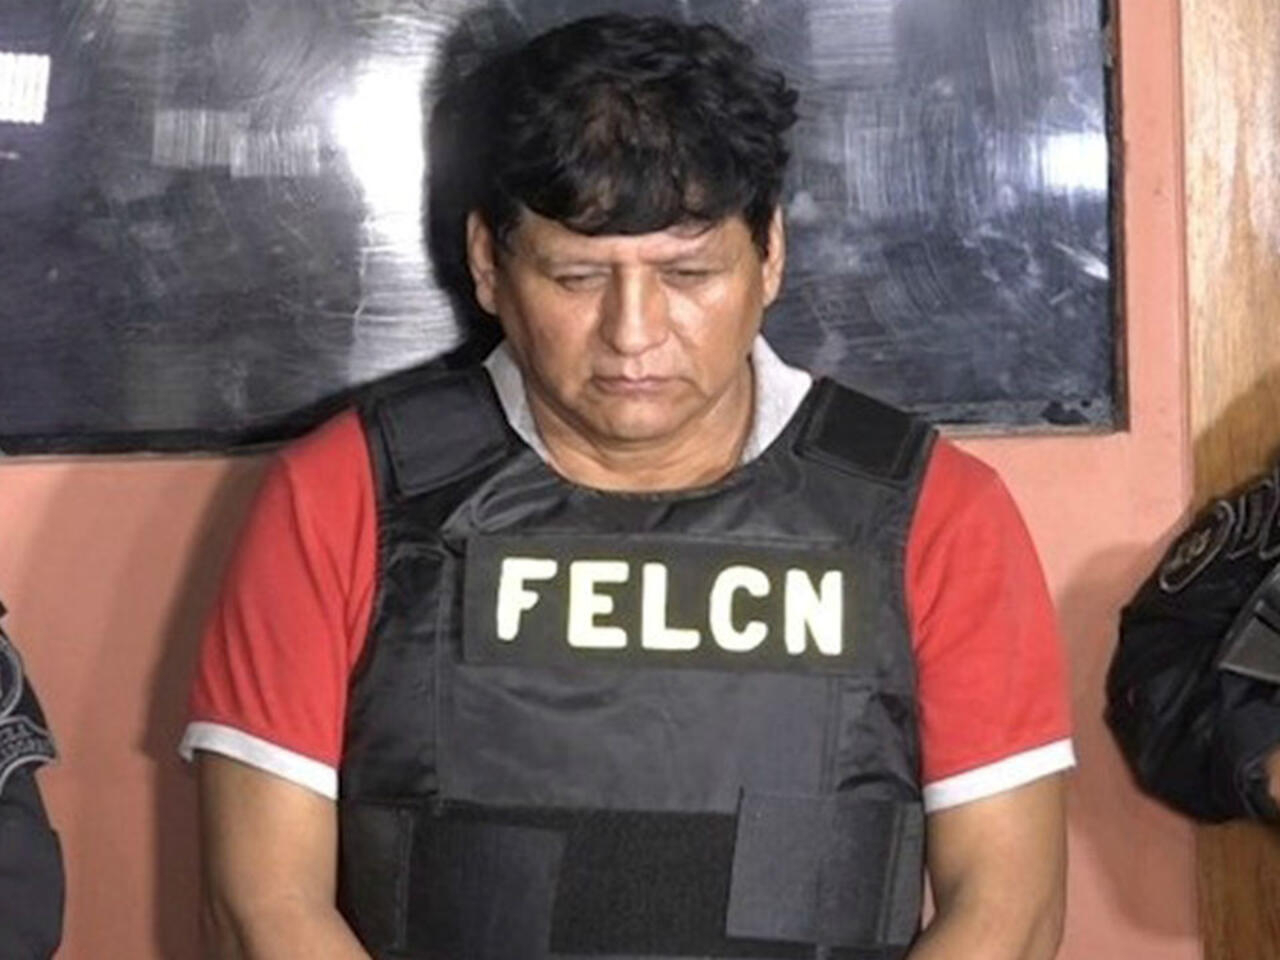 El narco argentino José Miguel Farfán Farfán actúa en Bolivia con el nombre de Miguel Ángel Yavi, y se lo conoce como “el Chapo del Cono Sur”.